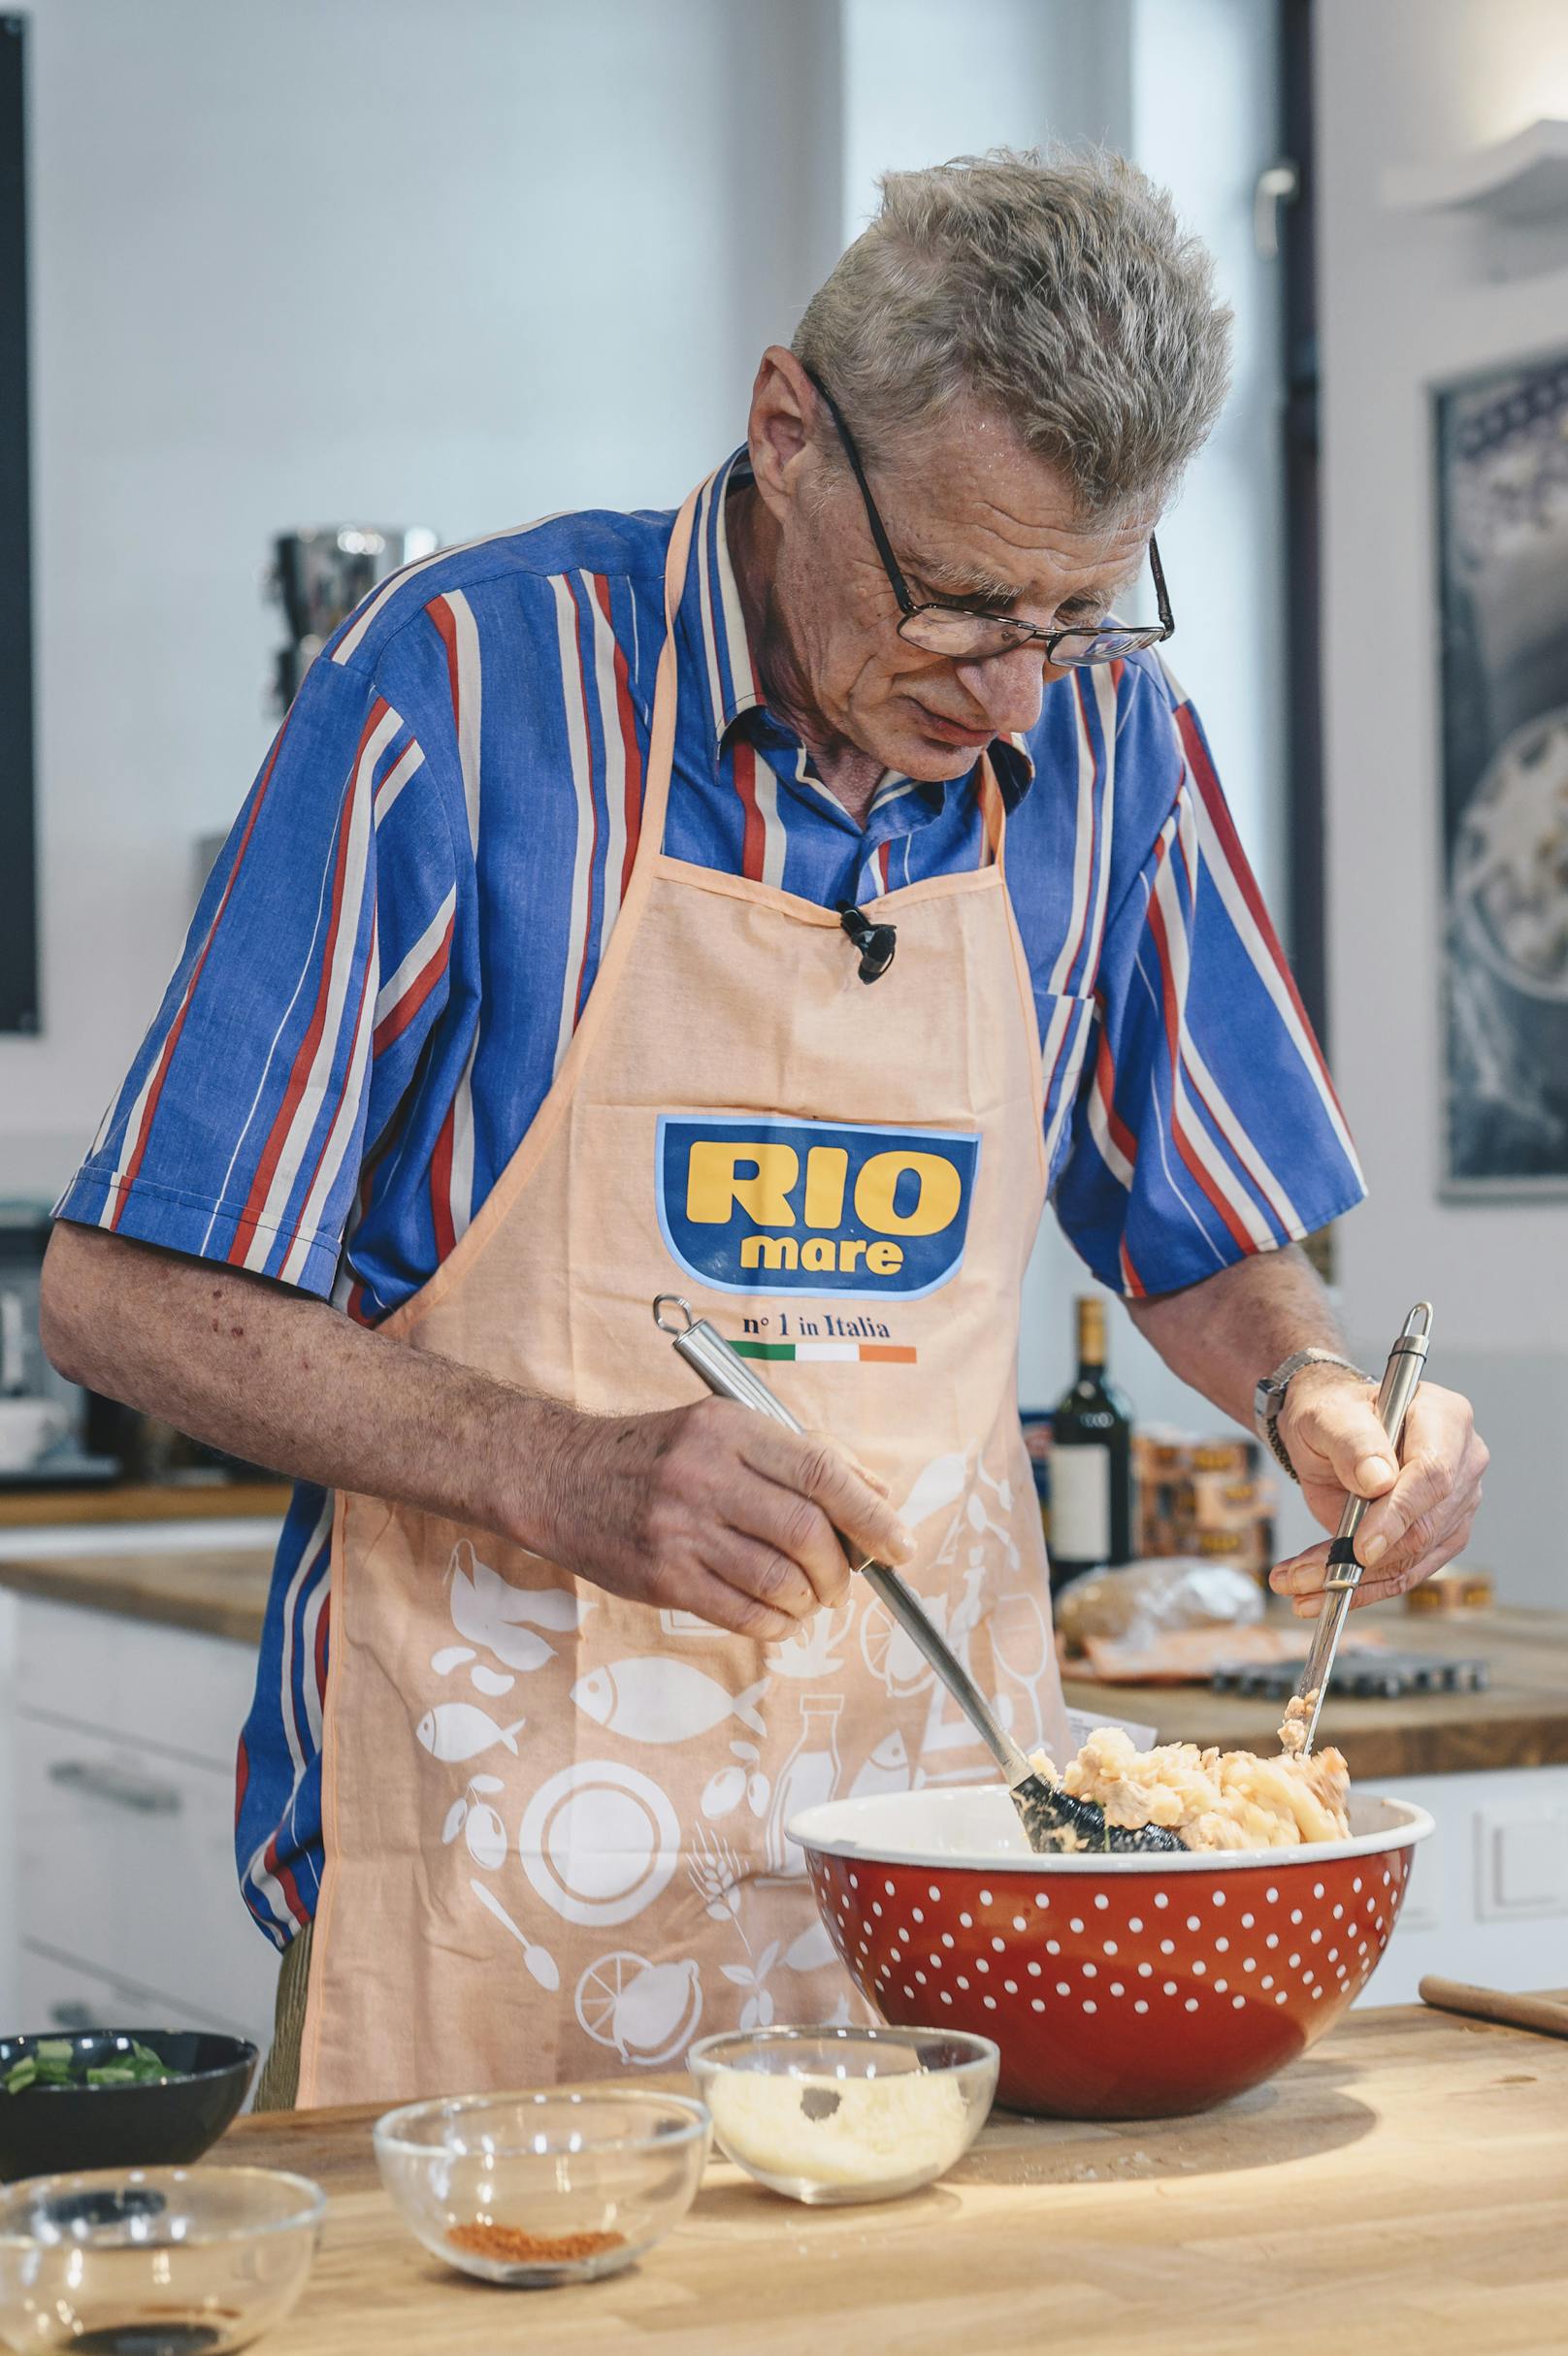 Kochstunde mit Rio Mare: Gewinner Walter bereitet "Fusilli mit Thunfisch-Tomaten-Oberssauce" zu.